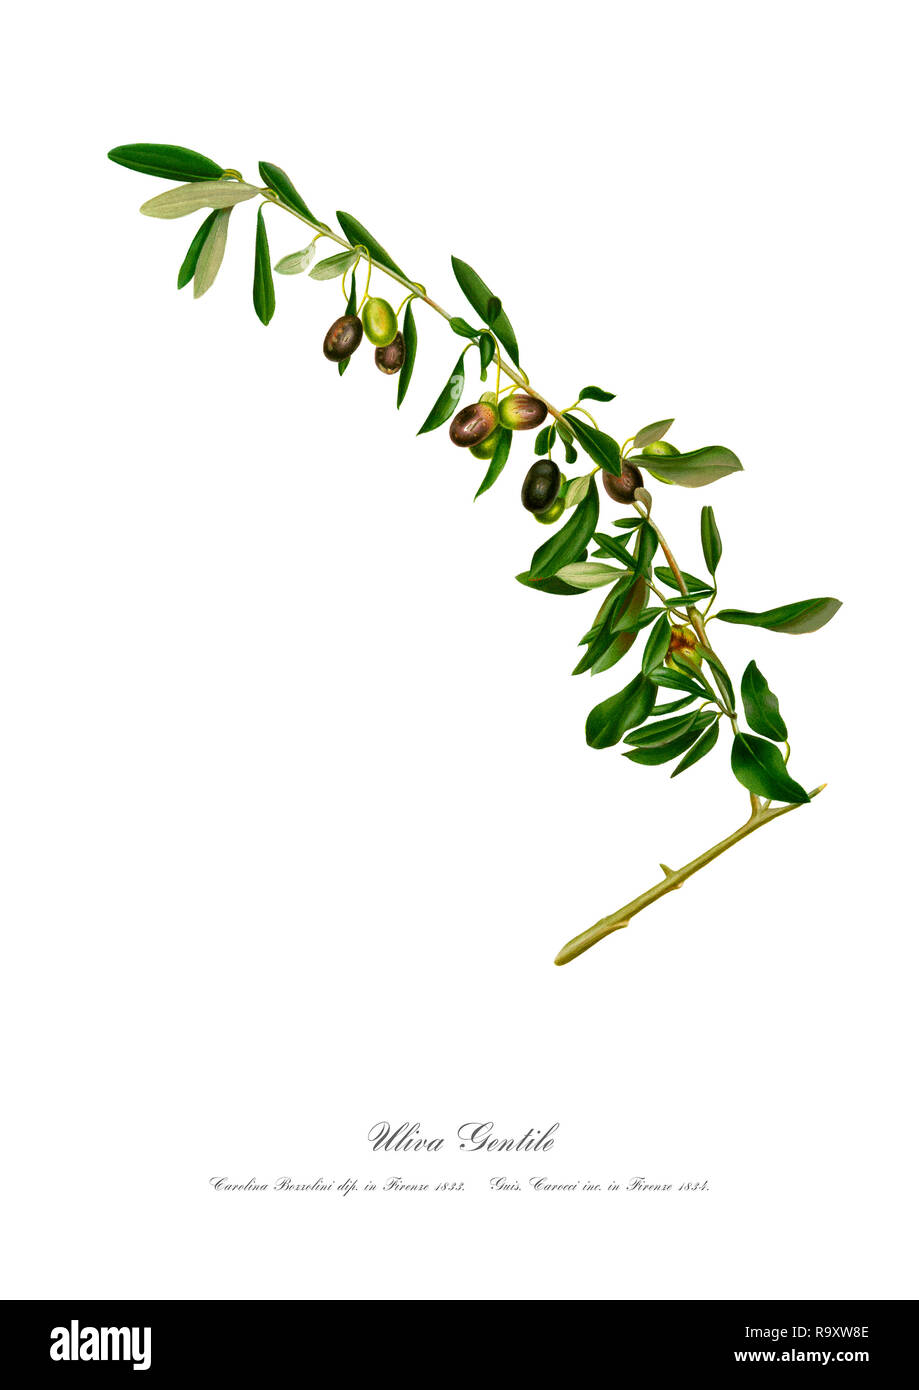 Vintage unique botanical illustration of branch of olives Stock Photo